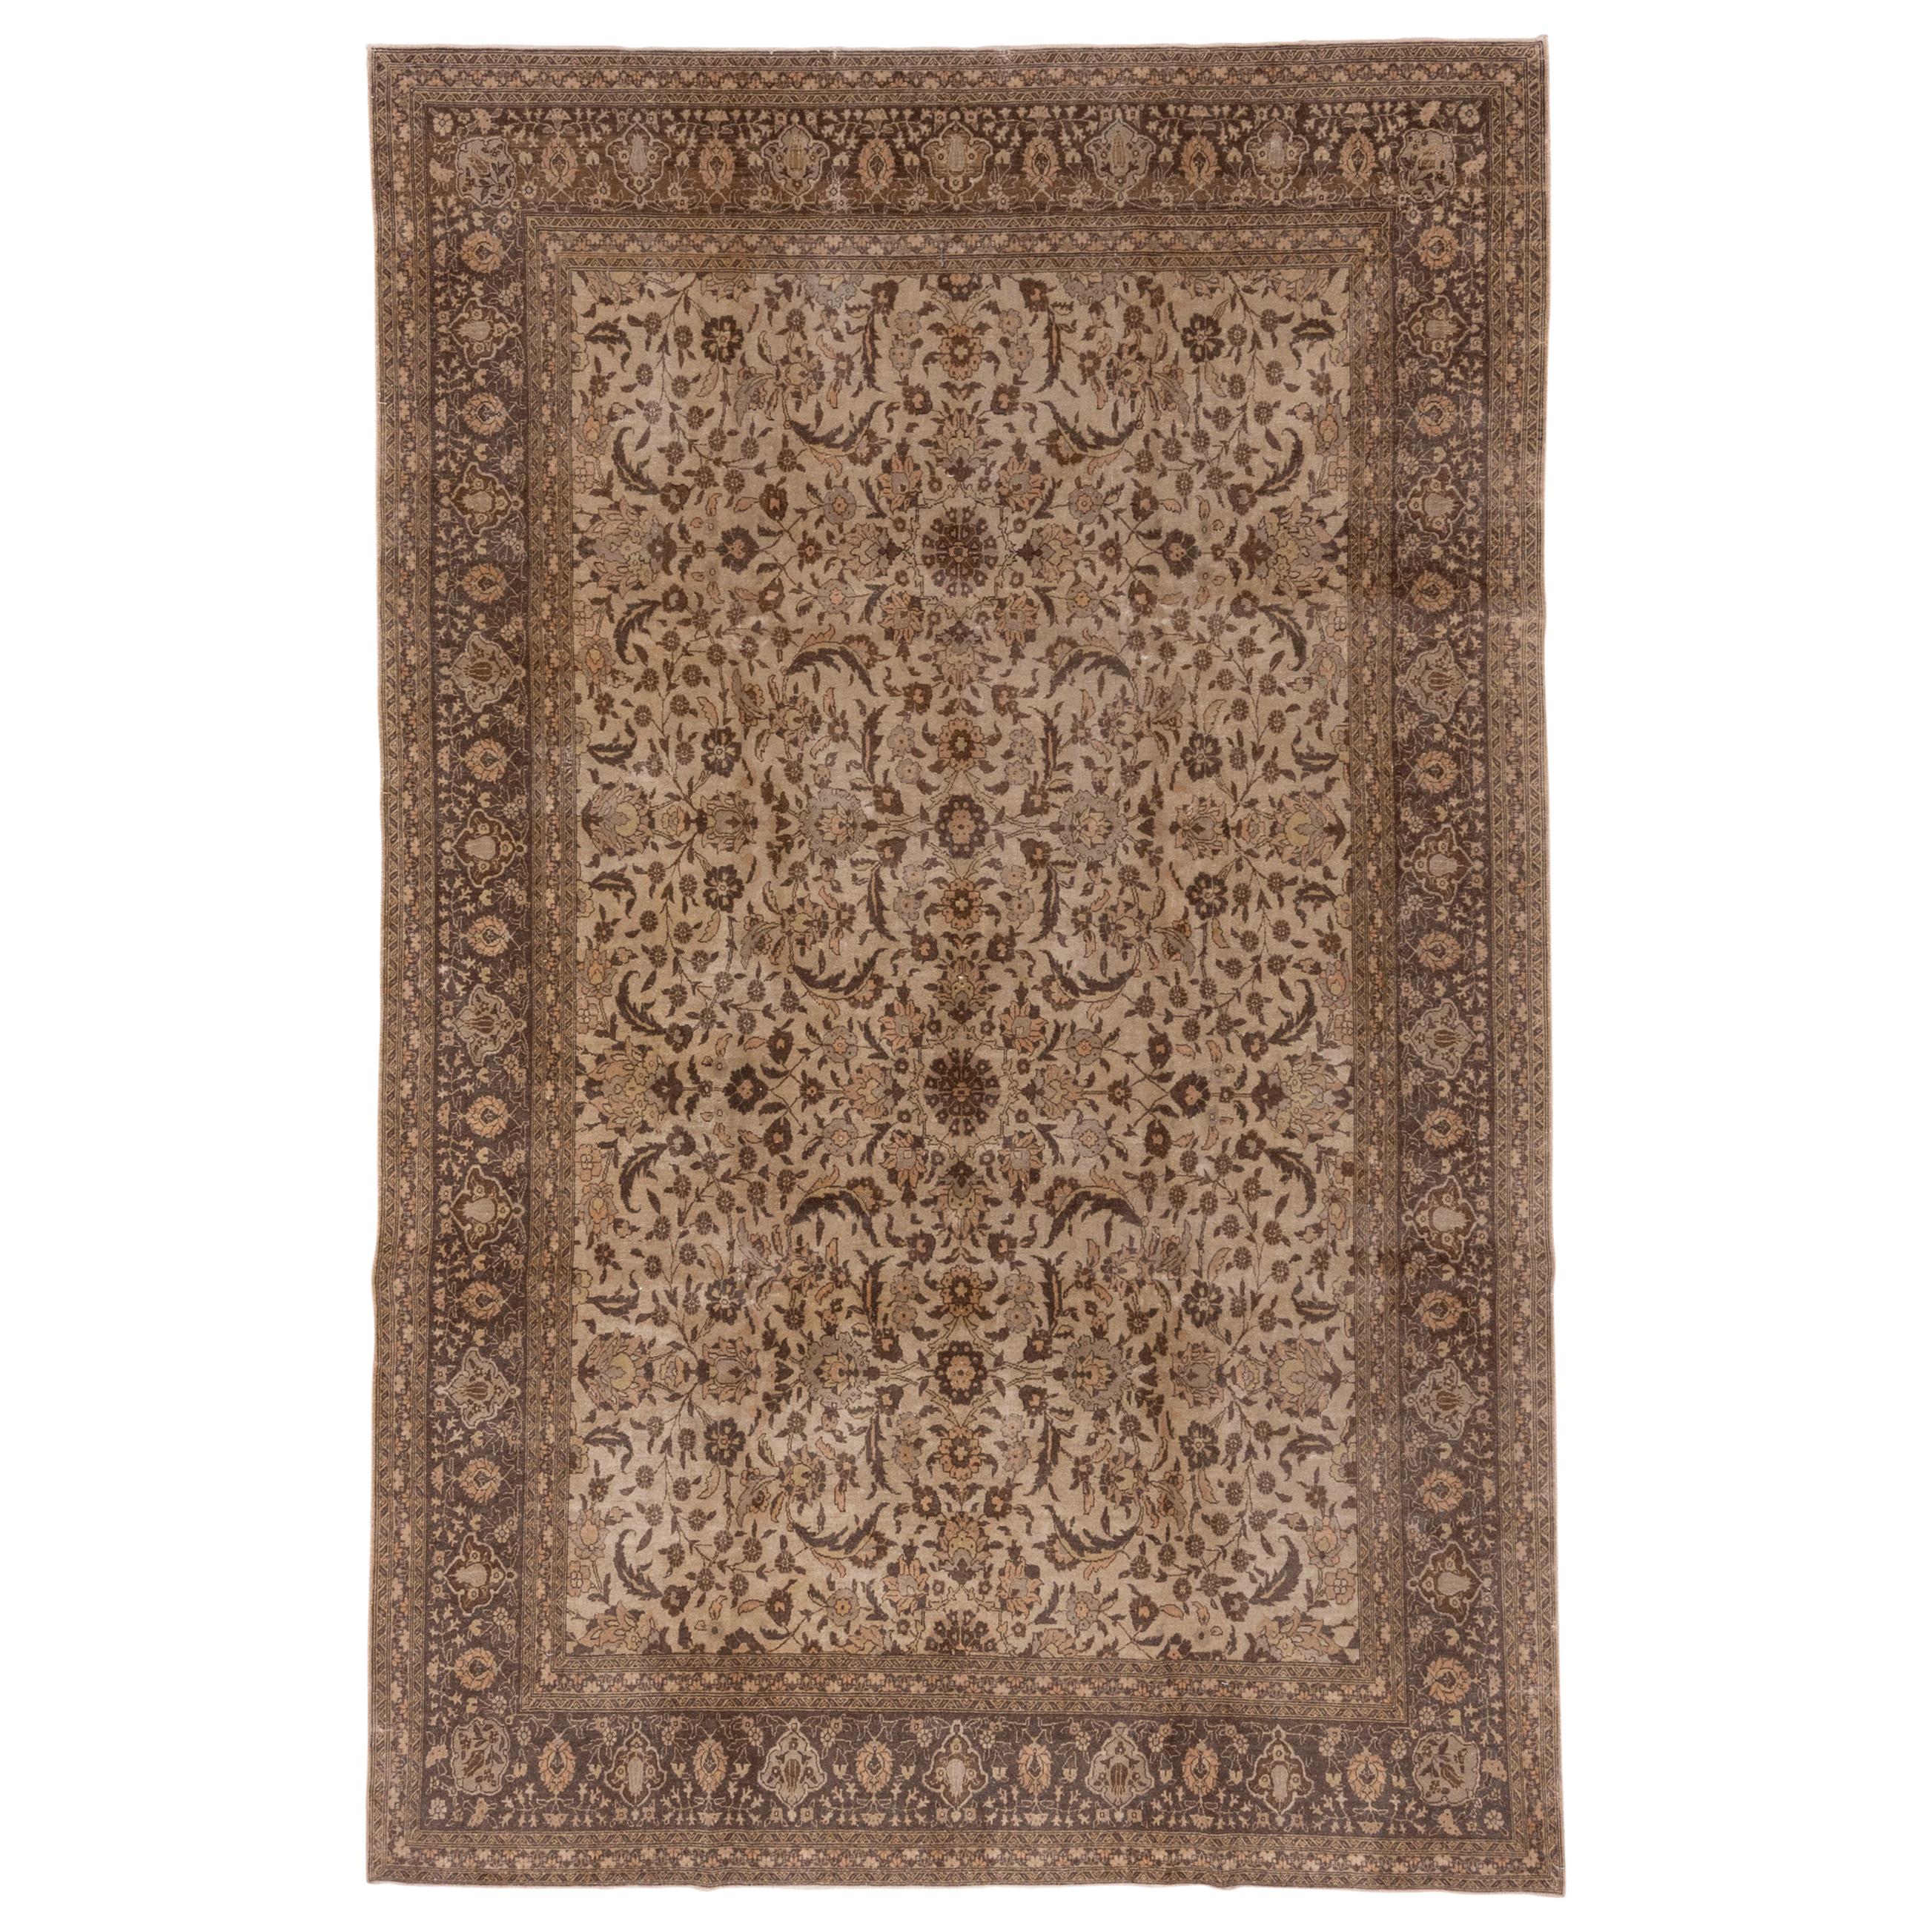 Fine Antique Turkish Sivas Carpet, Brown Palette, Allover Field